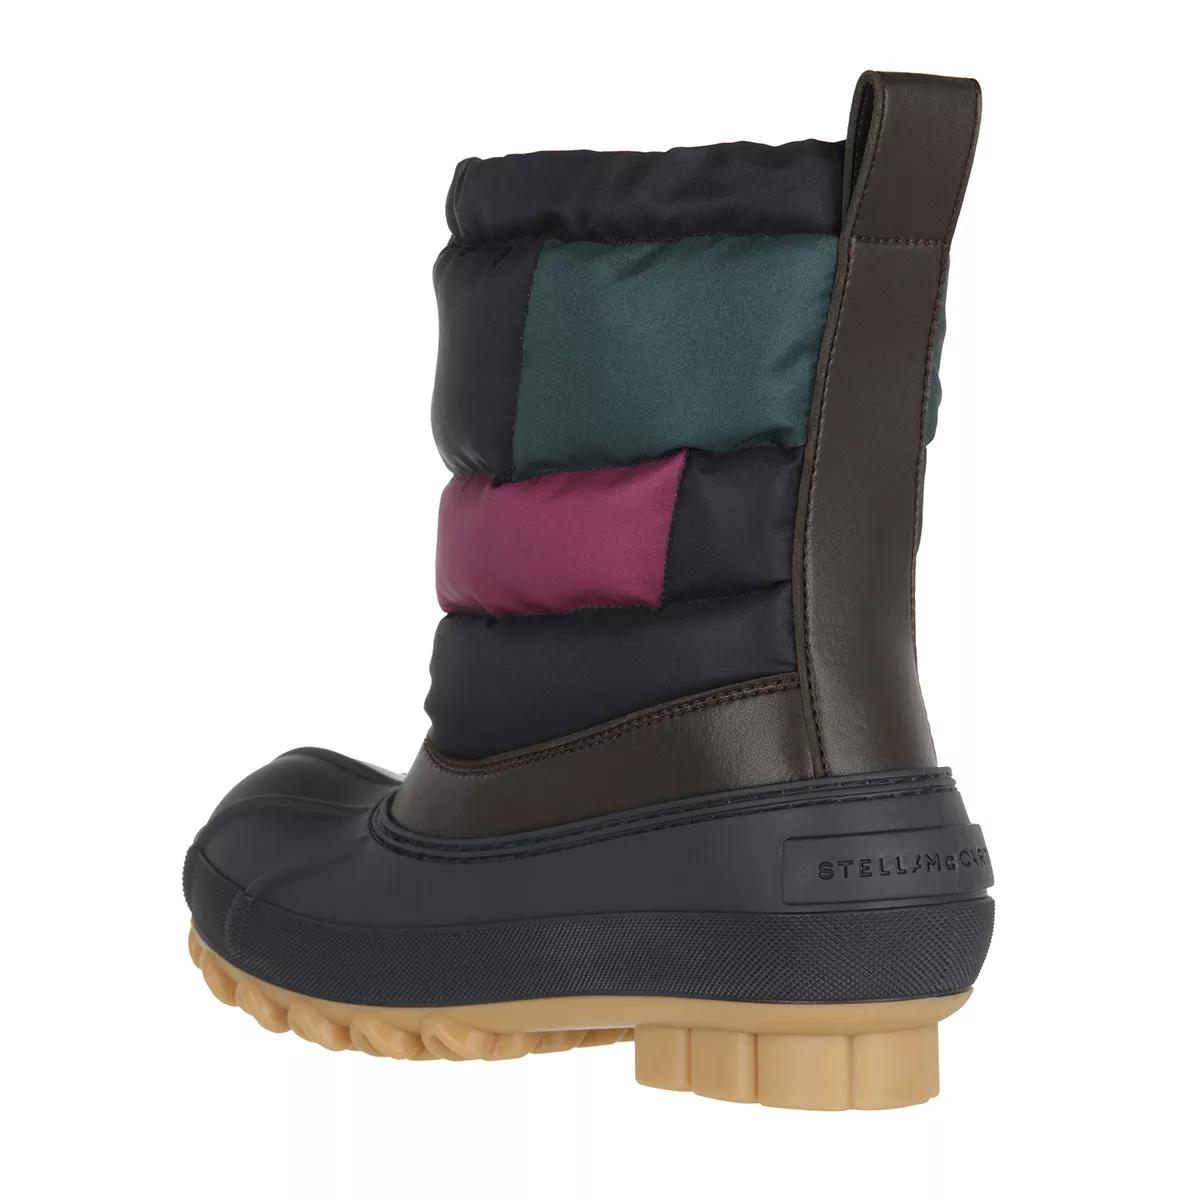 Stella McCartney Boots & Stiefeletten - Boots - Gr. 38 (EU) - in Bunt - für Damen von Stella Mccartney